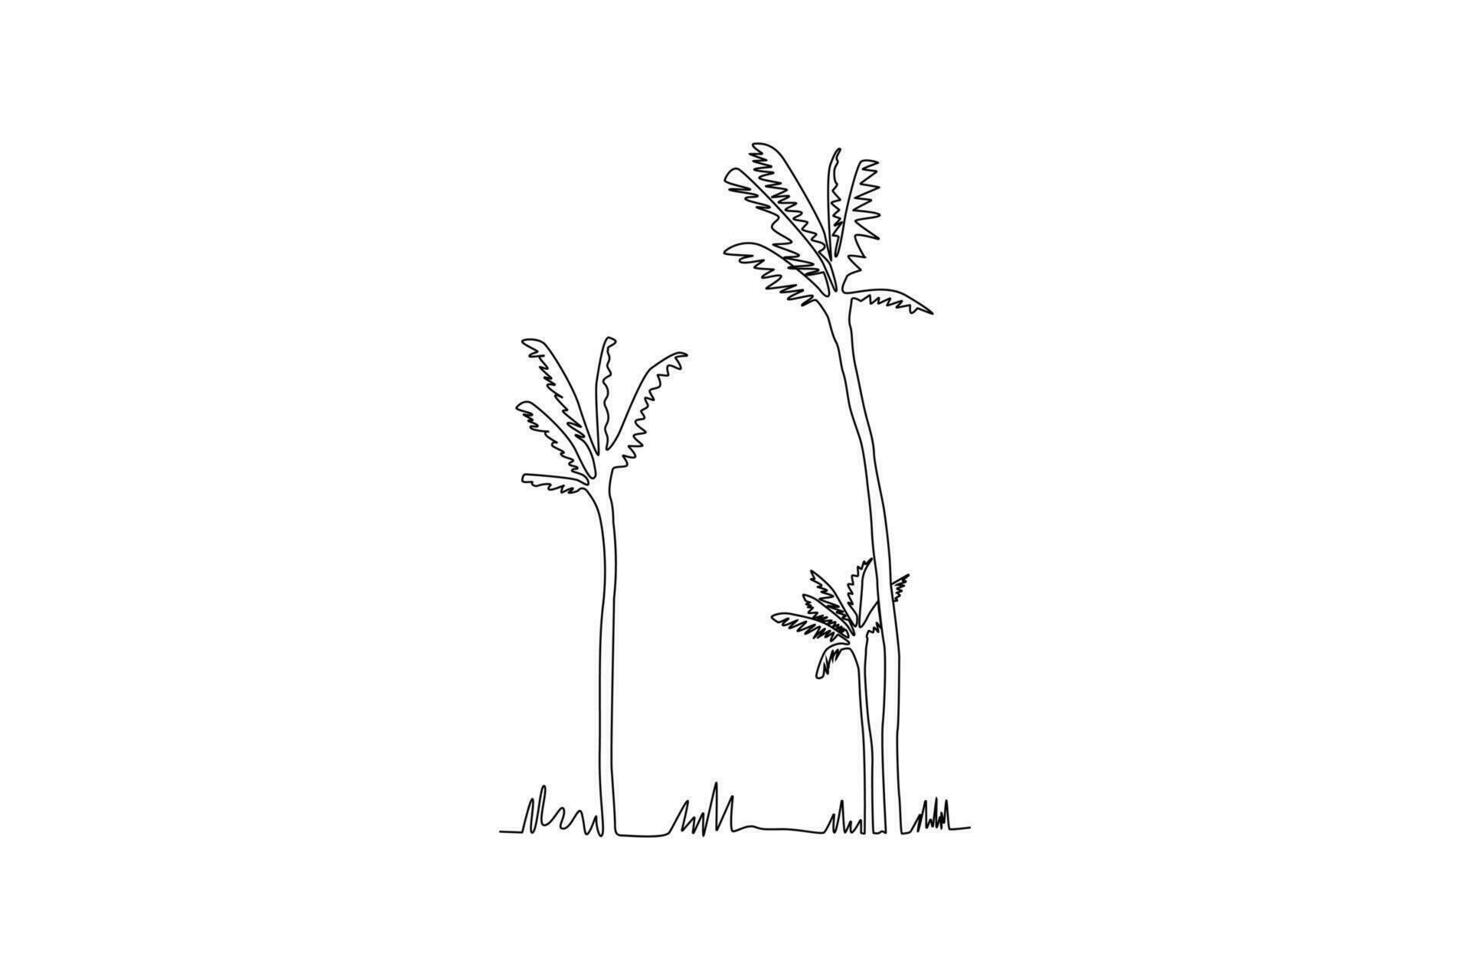 kontinuierlich eine Linie Zeichnung drei hoch Kokosnuss Bäume. Baum Konzept Single Linie Zeichnung Design Grafik Vektor Illustration